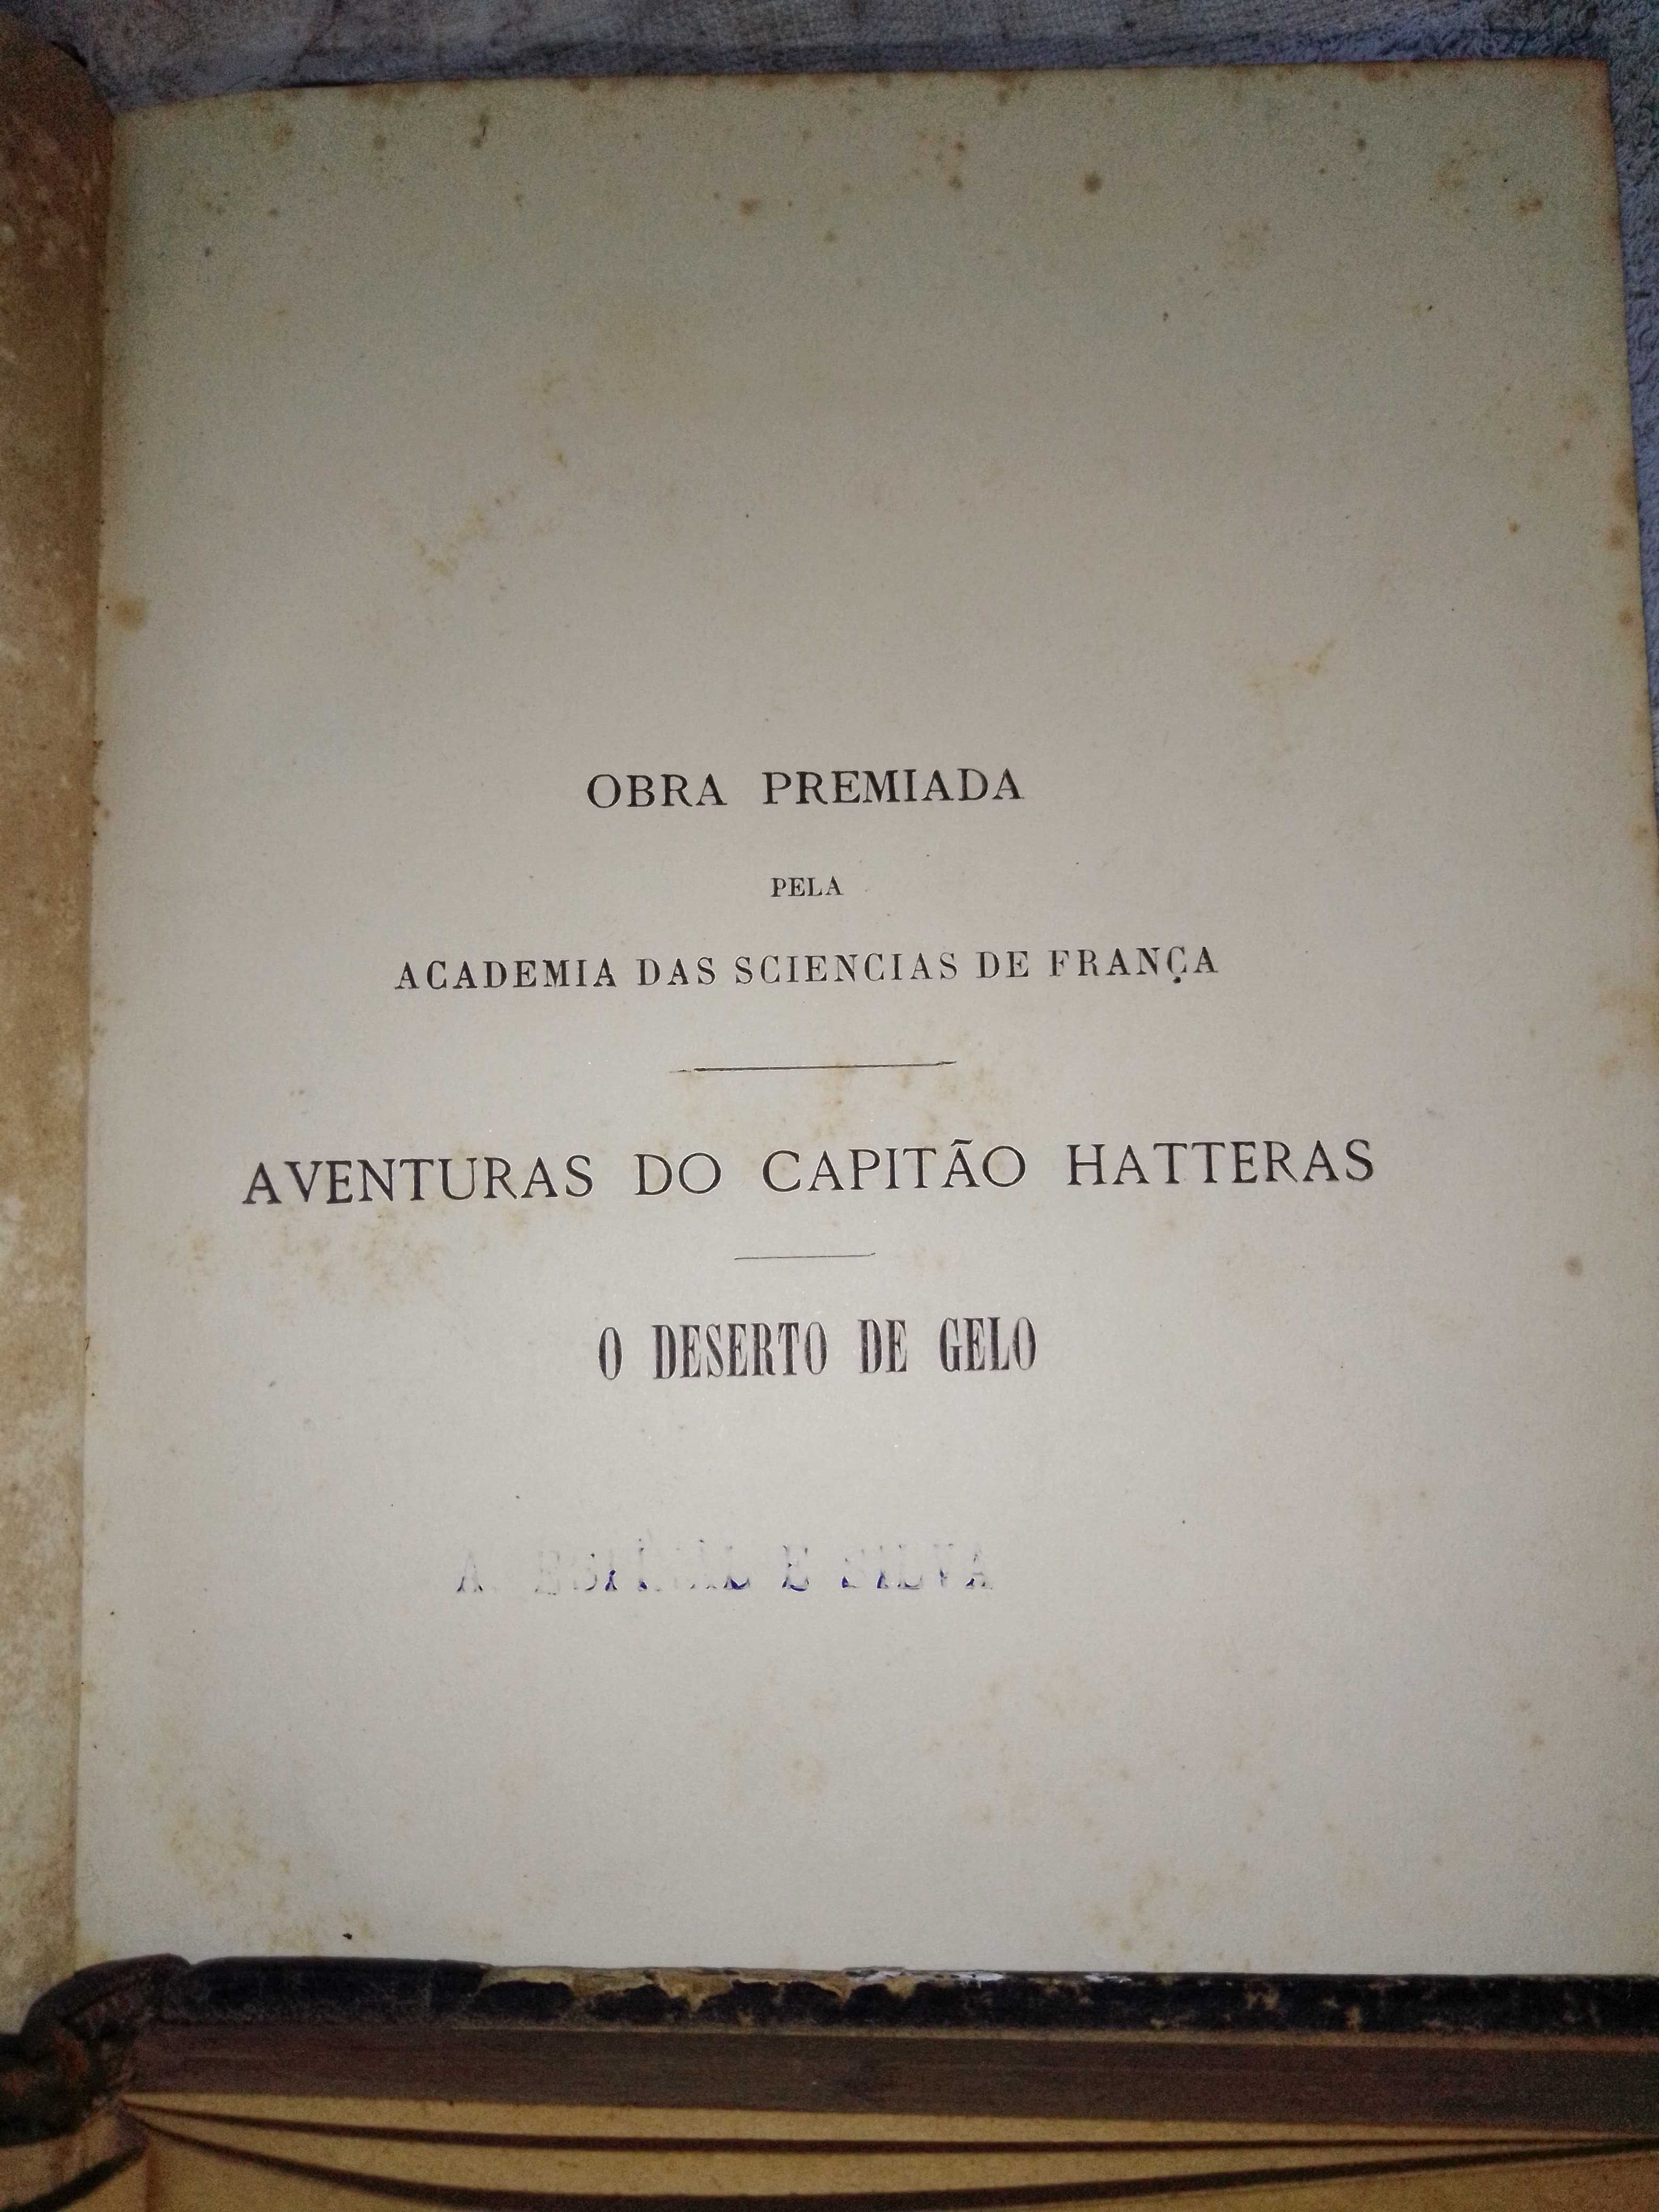 Antigos Livros de Júlio Verne 1800 e 1880